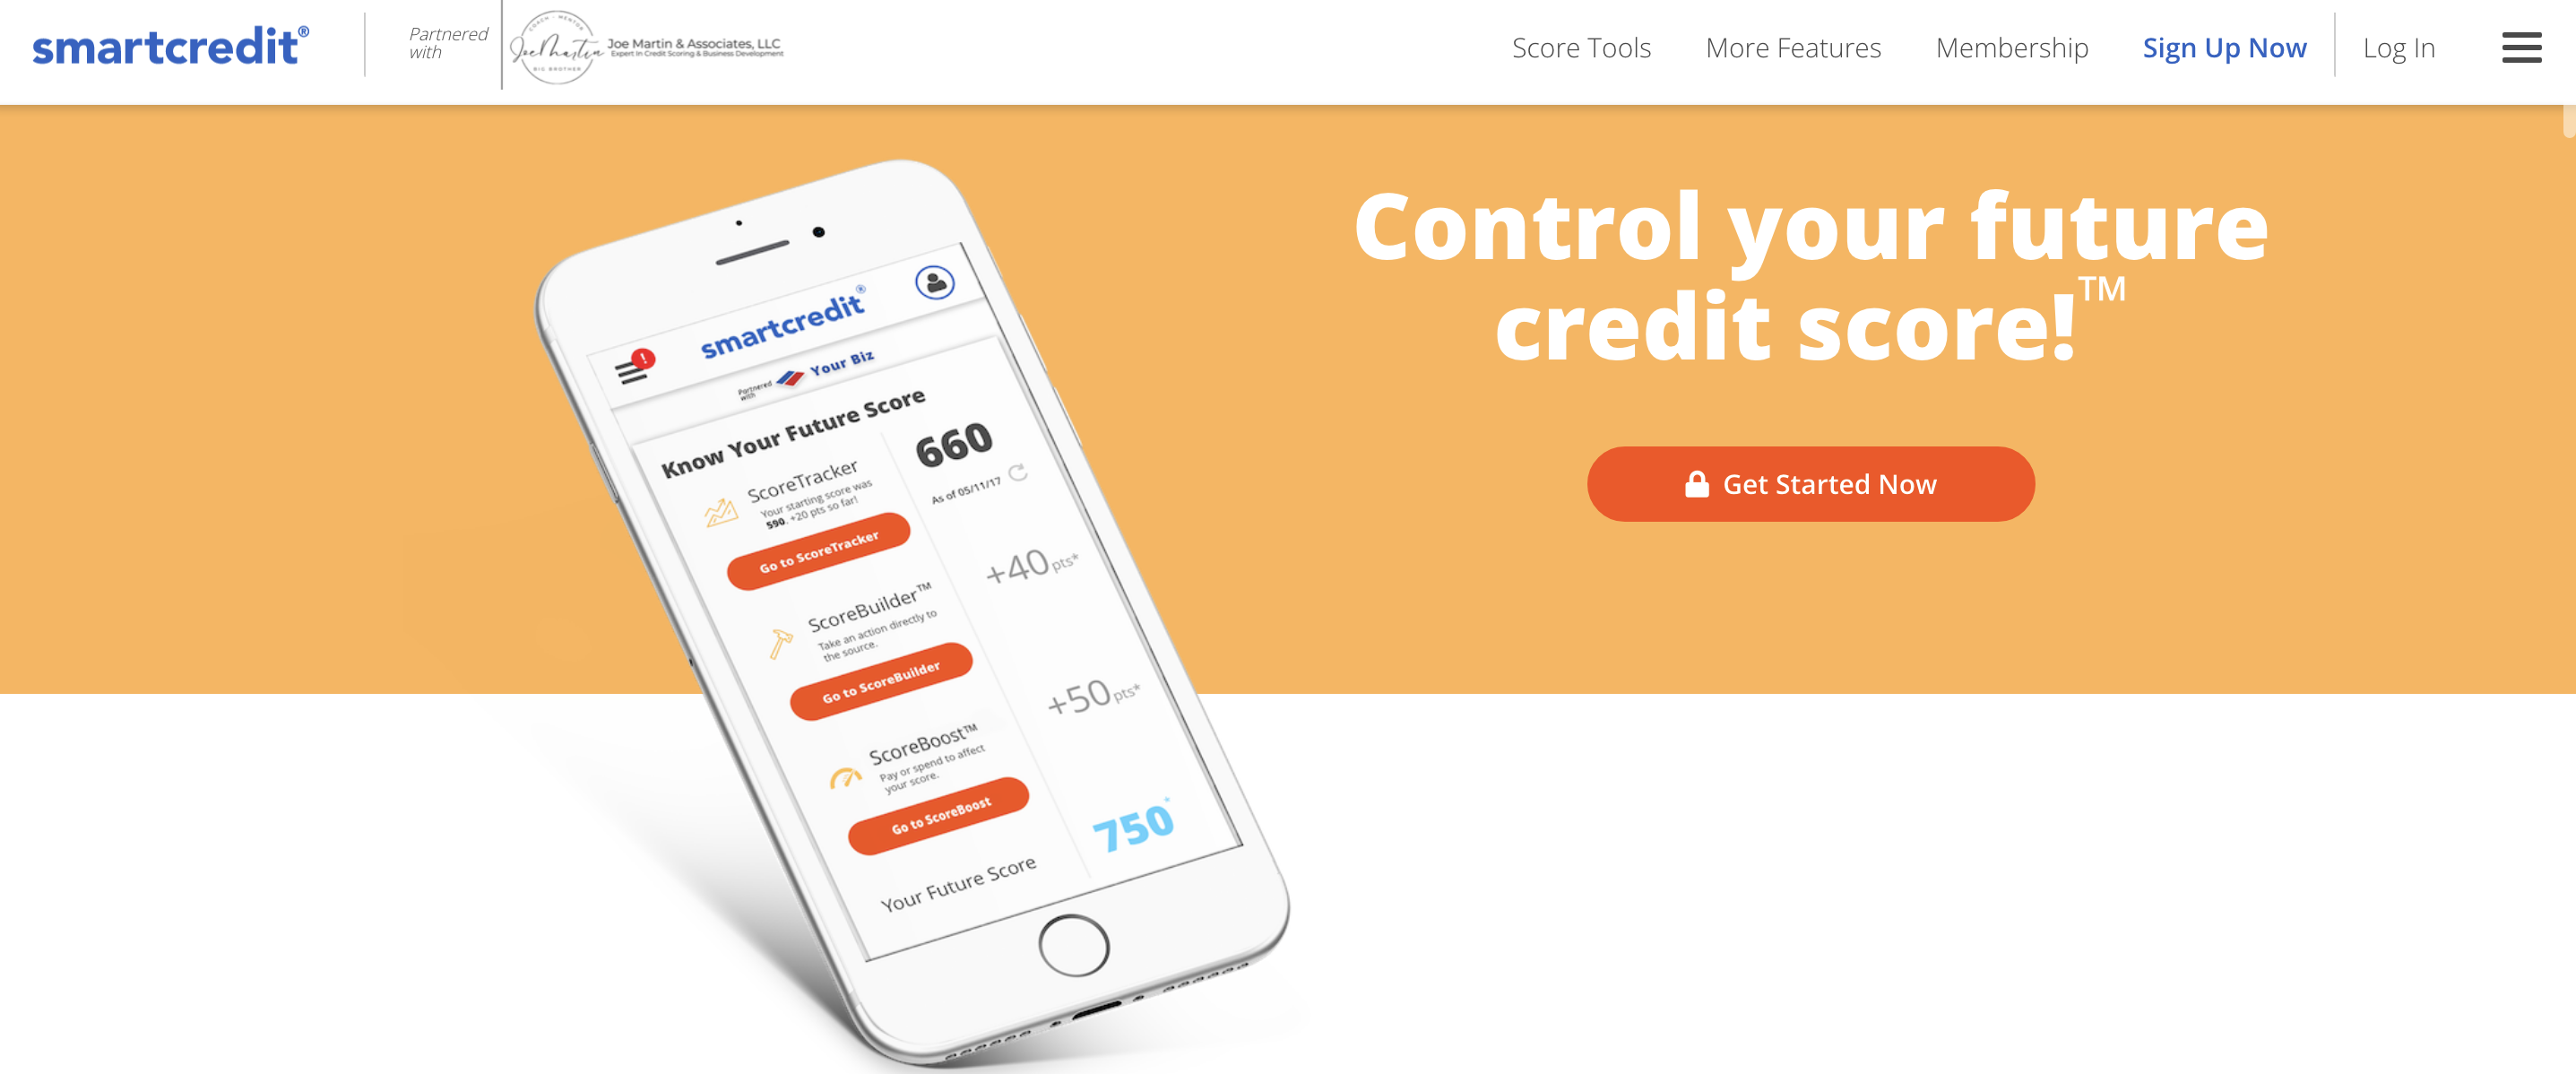 Credit Monitoring